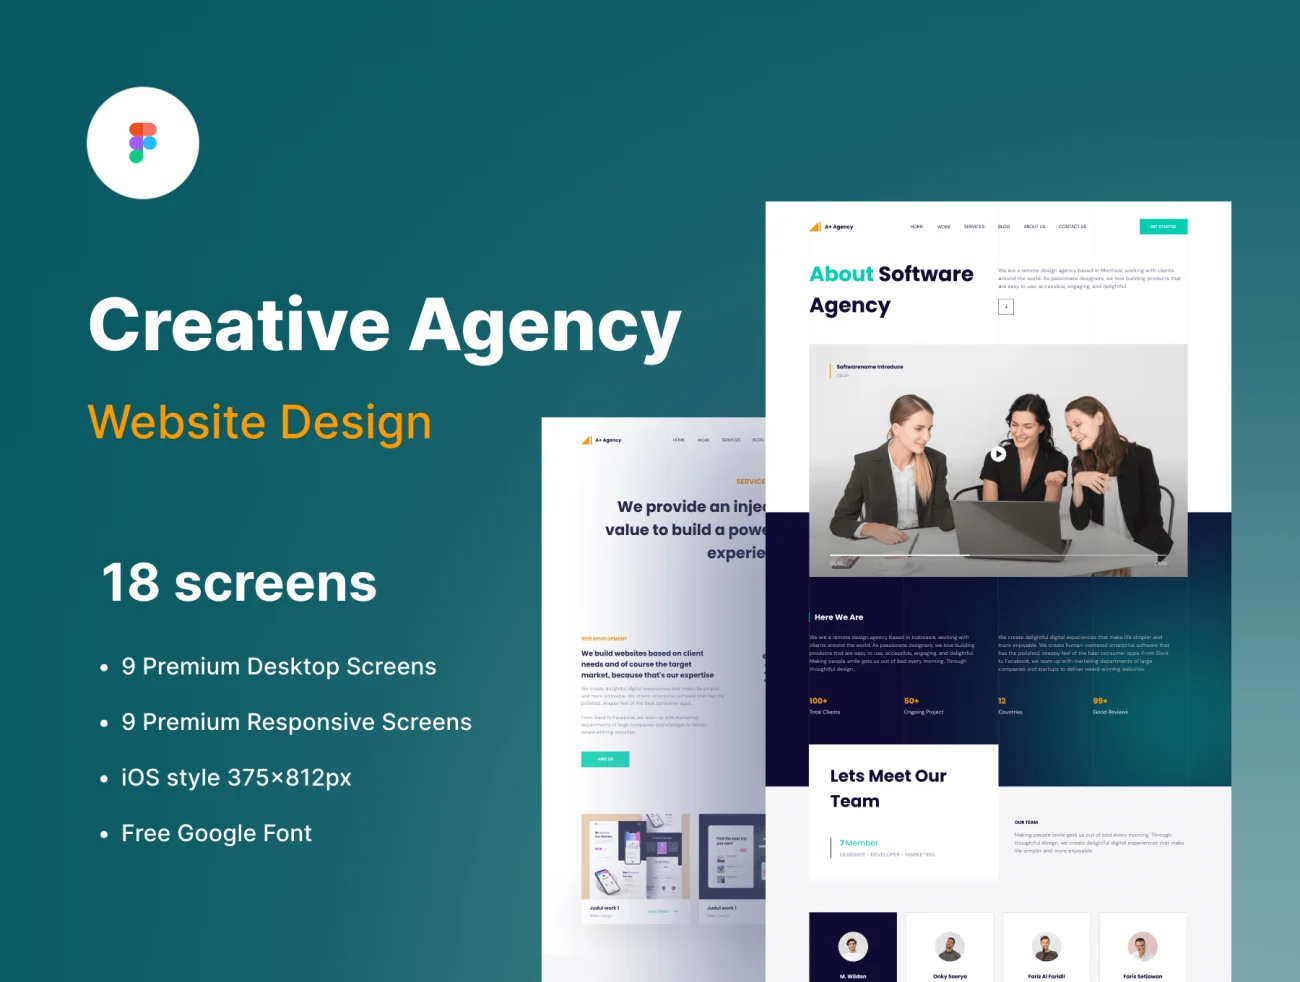 18屏创意机构工作室网站设计模板 Creative Agency – Website Design UI-Kit插图1